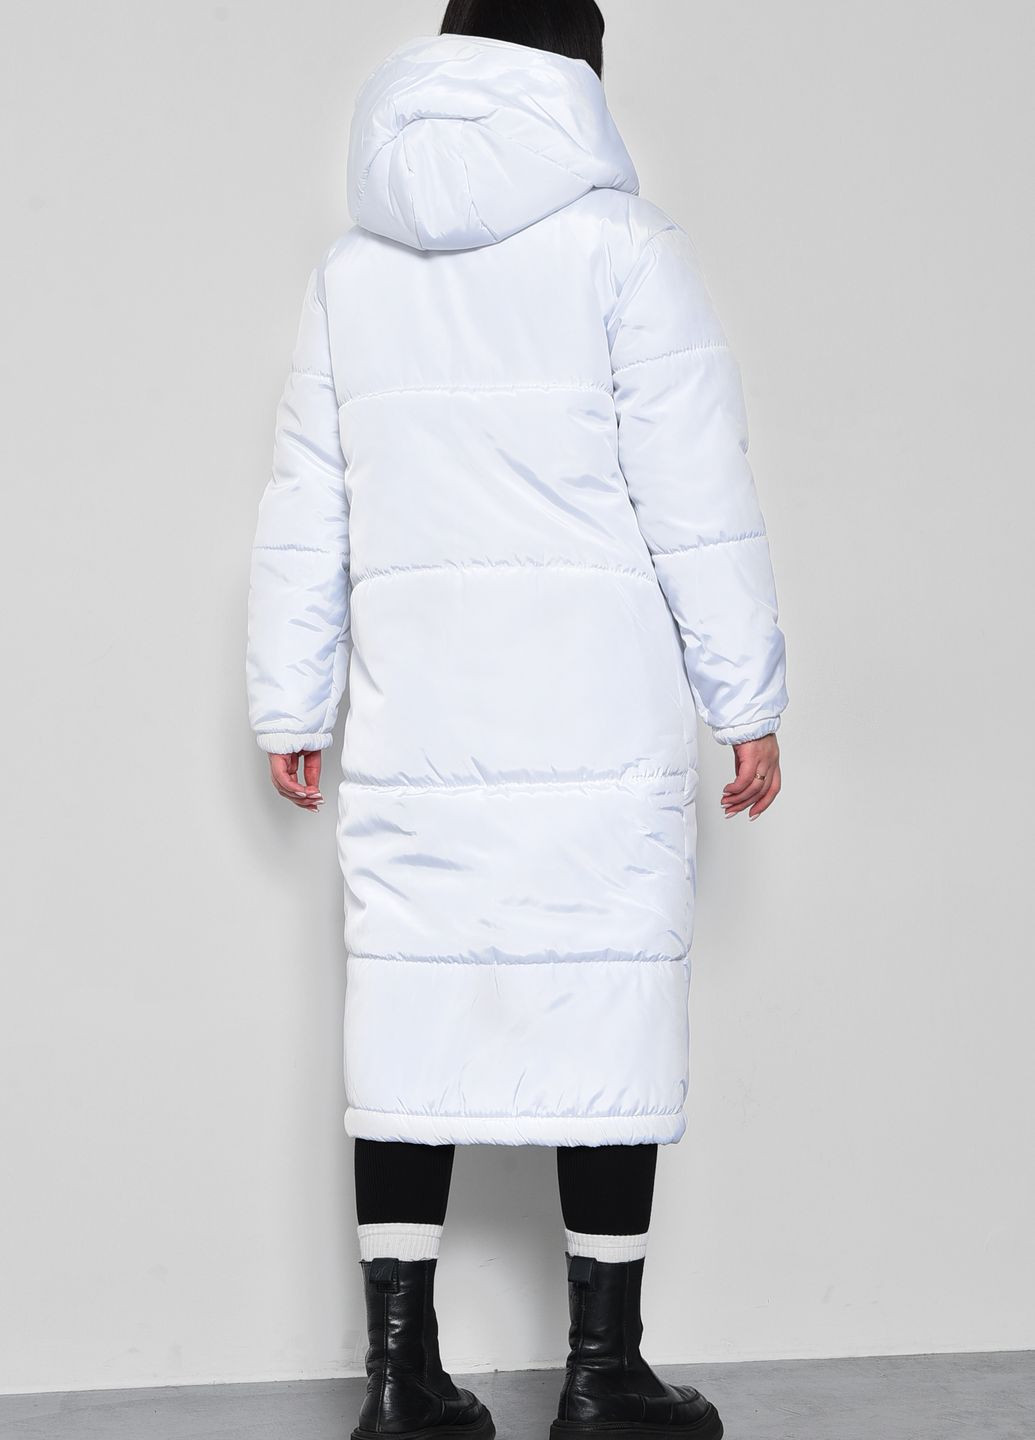 Белая зимняя куртка женская еврозима удлиненная белого цвета Let's Shop